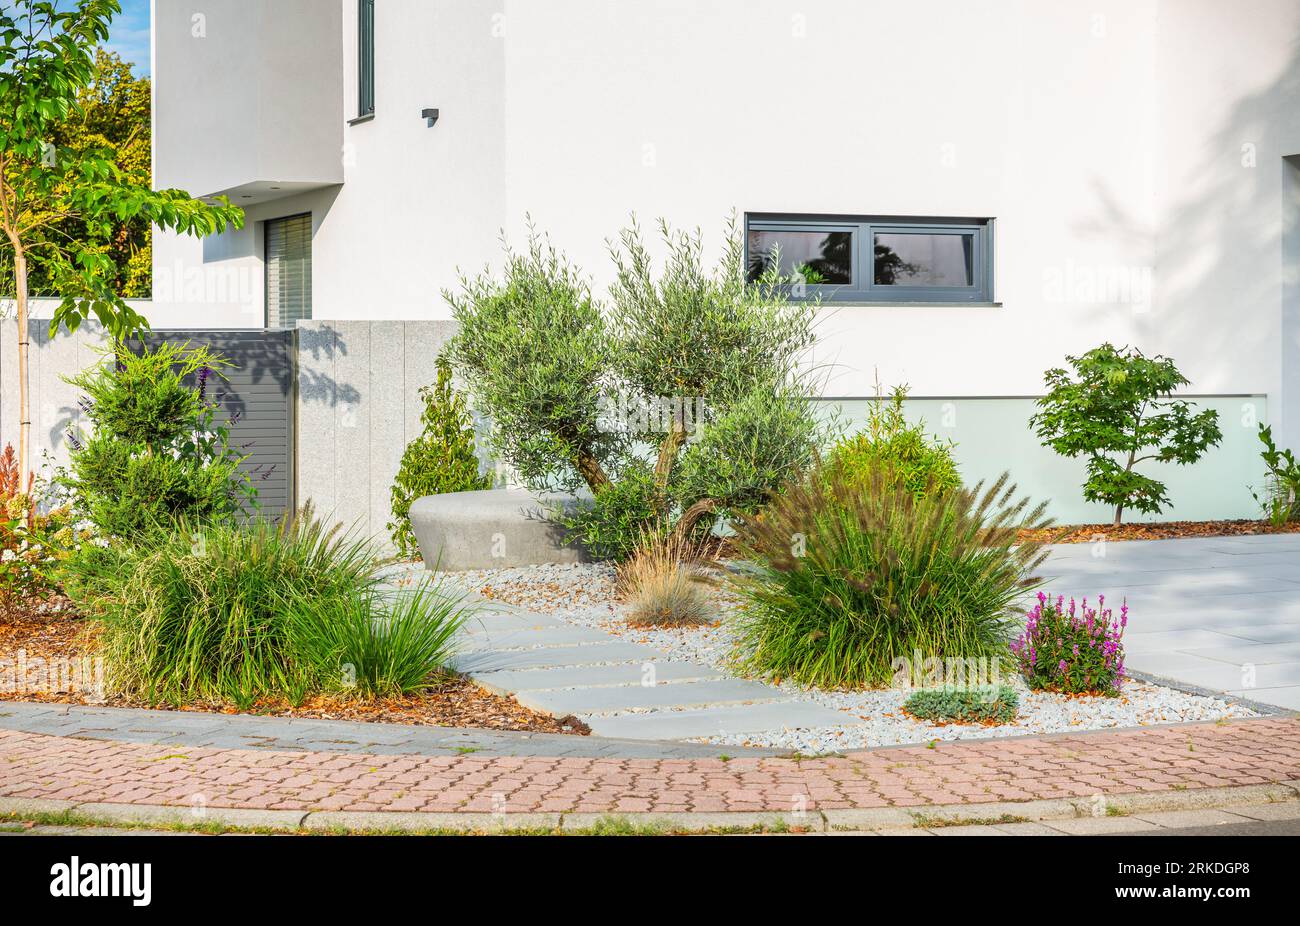 Der Innenhof eines modernen Hauses, Gartendetails mit bunten Pflanzen, trockene Grasbeete, umgeben von grauen Felsen. Stockfoto